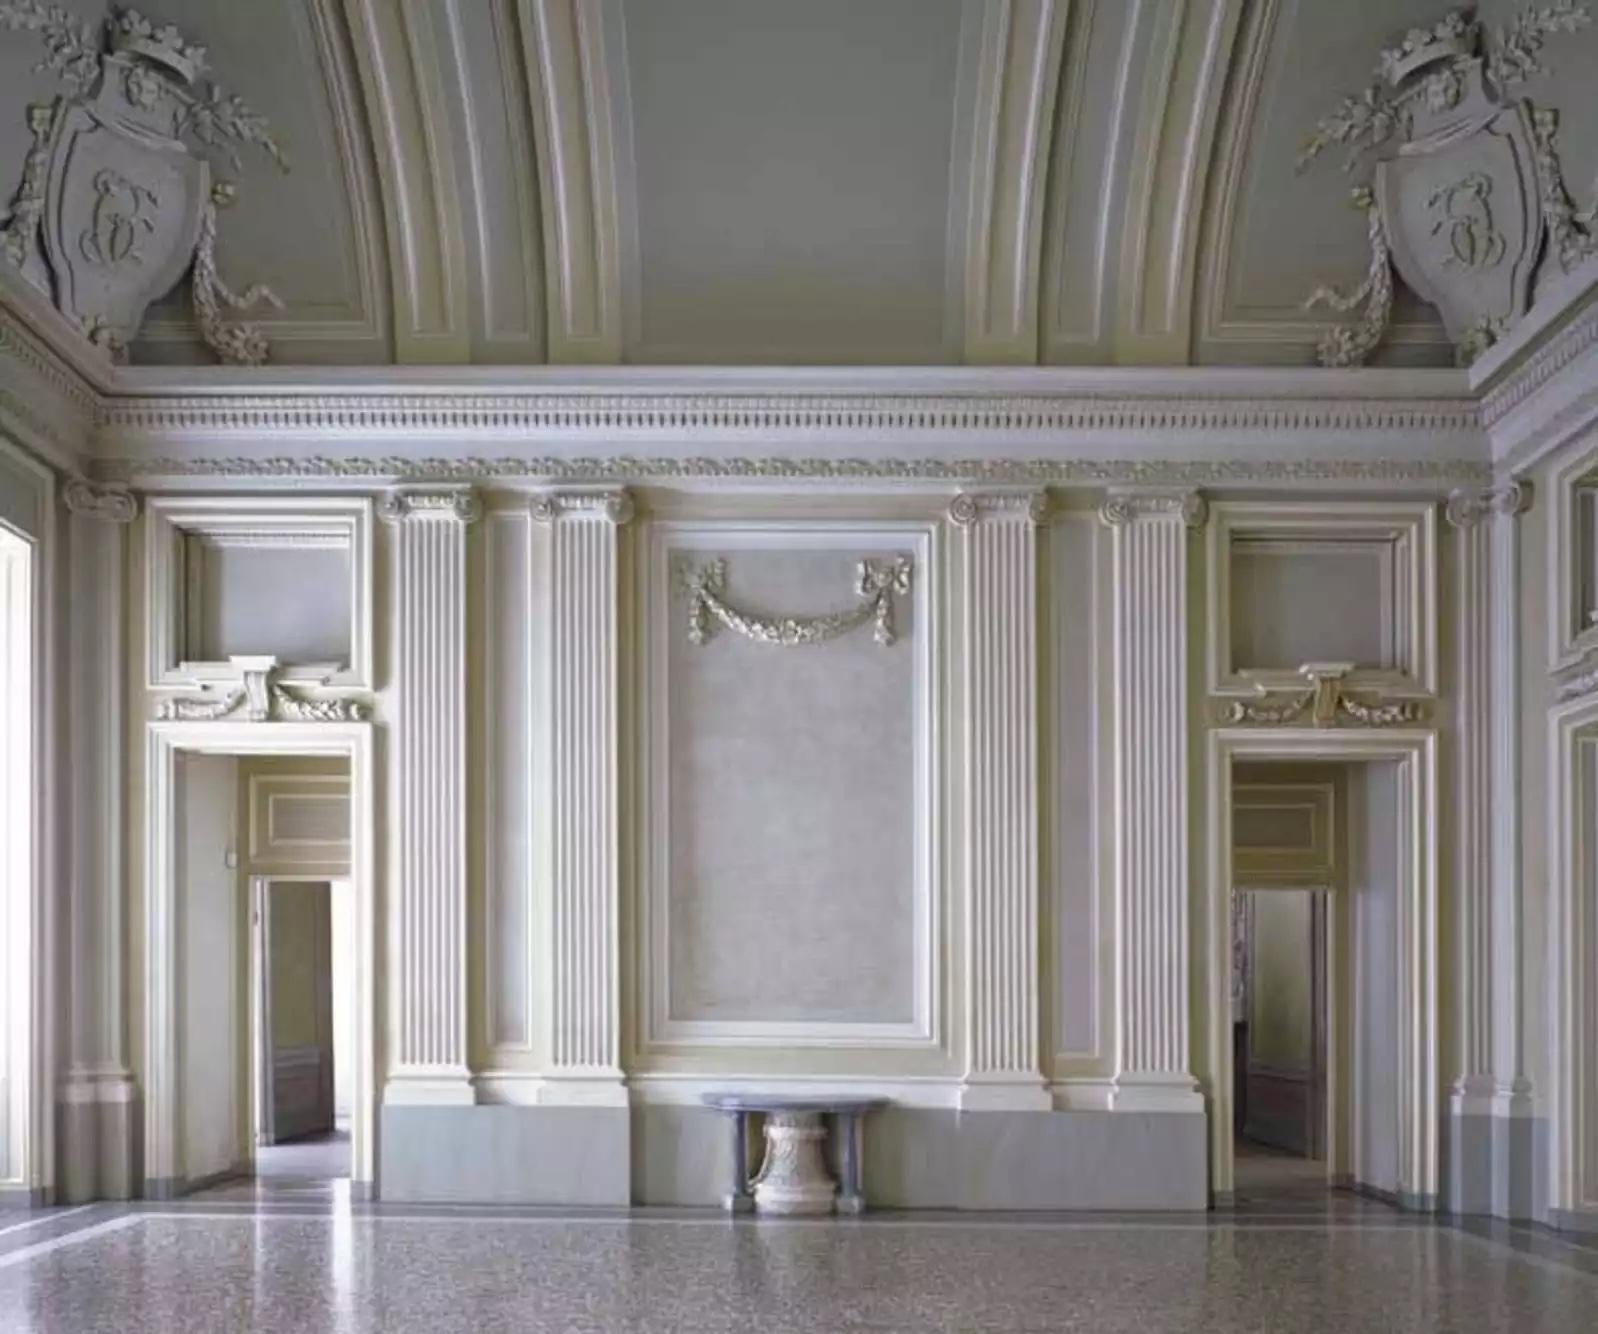 Château de Rivoli
2007
Tirage chromogène
180 x 225 cm
Edition de 5

Italien, né en 1954 à Florence, Italie, basé à Florence, Italie

Massimo Listri parcourt son Italie natale et le monde avec son appareil photo, photographiant de grands espaces